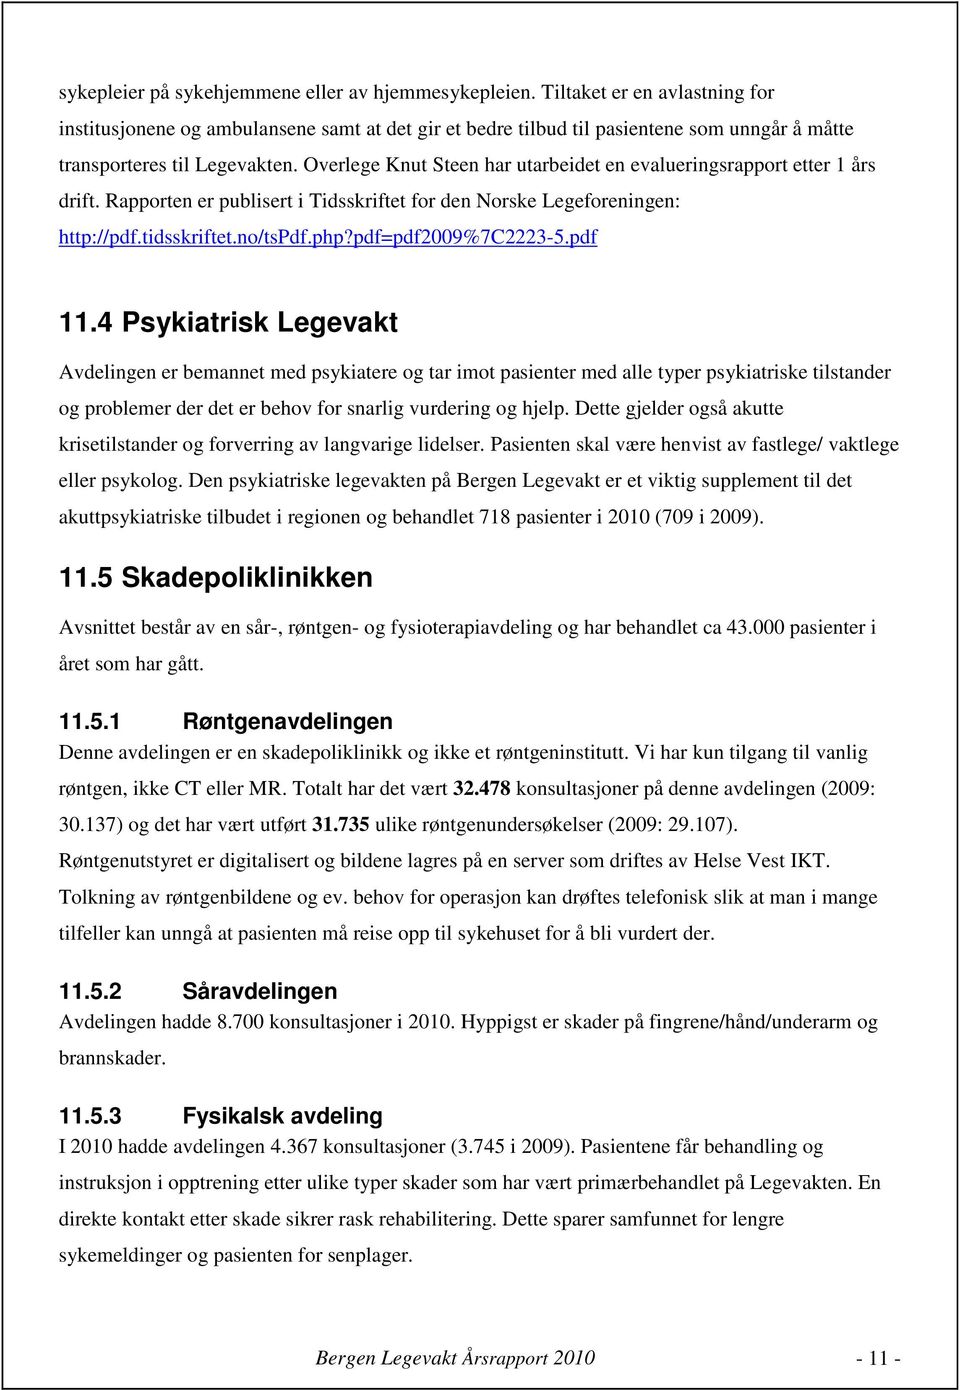 Overlege Knut Steen har utarbeidet en evalueringsrapport etter 1 års drift. Rapporten er publisert i Tidsskriftet for den Norske Legeforeningen: http://pdf.tidsskriftet.no/tspdf.php?